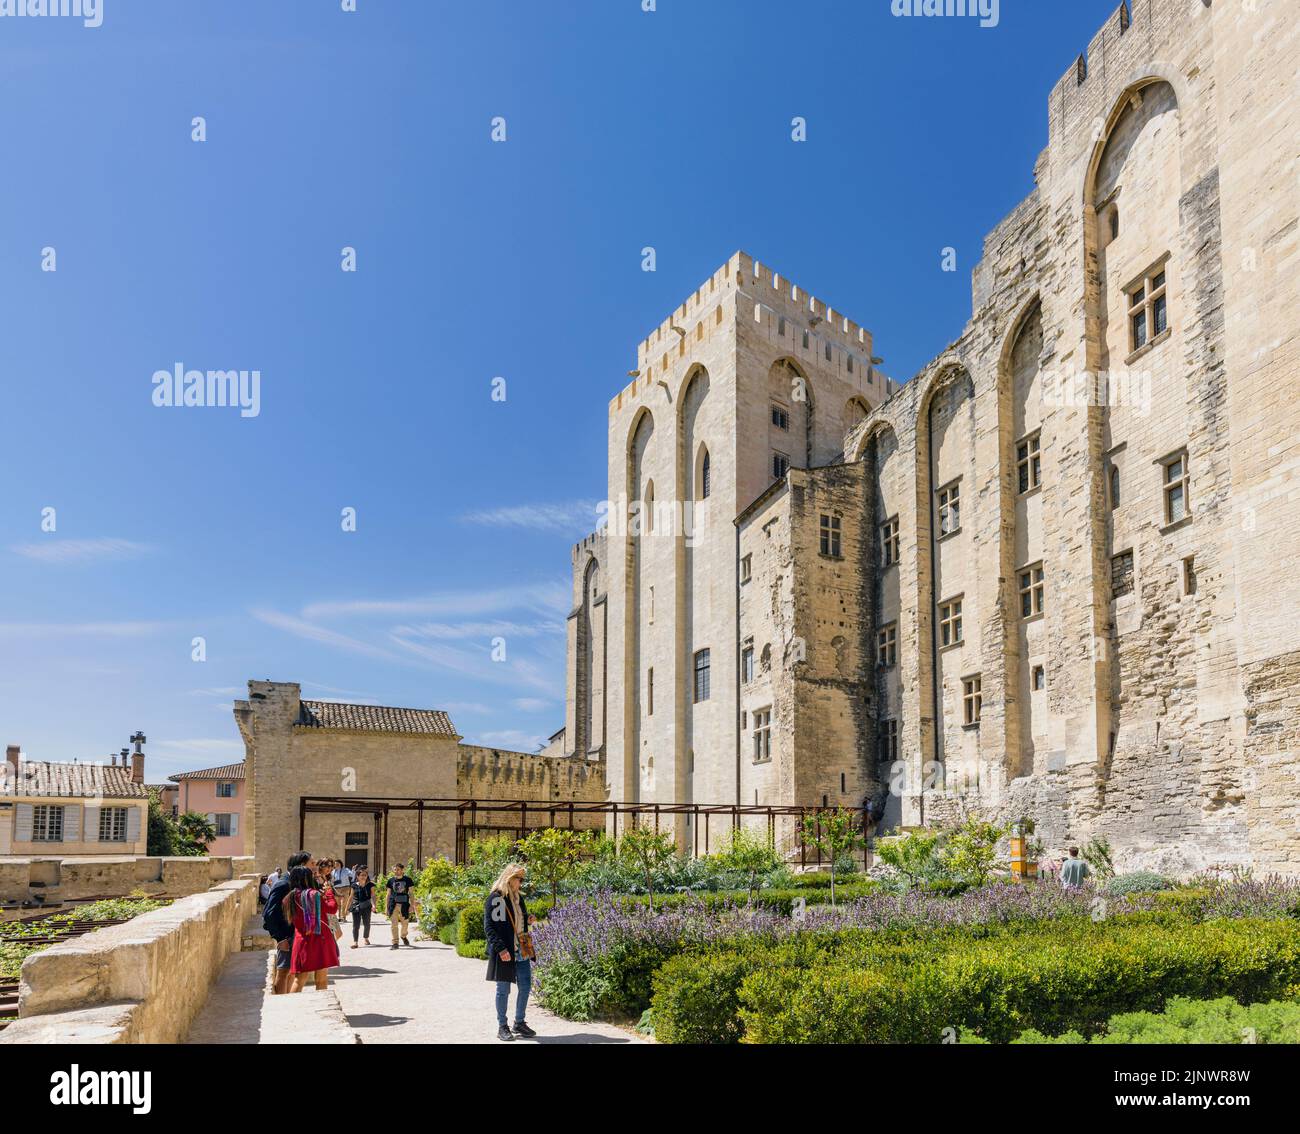 Les jardins du Palais des Papes - Palais des Papes, Avignon, Vaucluse, France. Le Centre historique d'Avignon est un site classé au patrimoine mondial de l'UNESCO. Banque D'Images